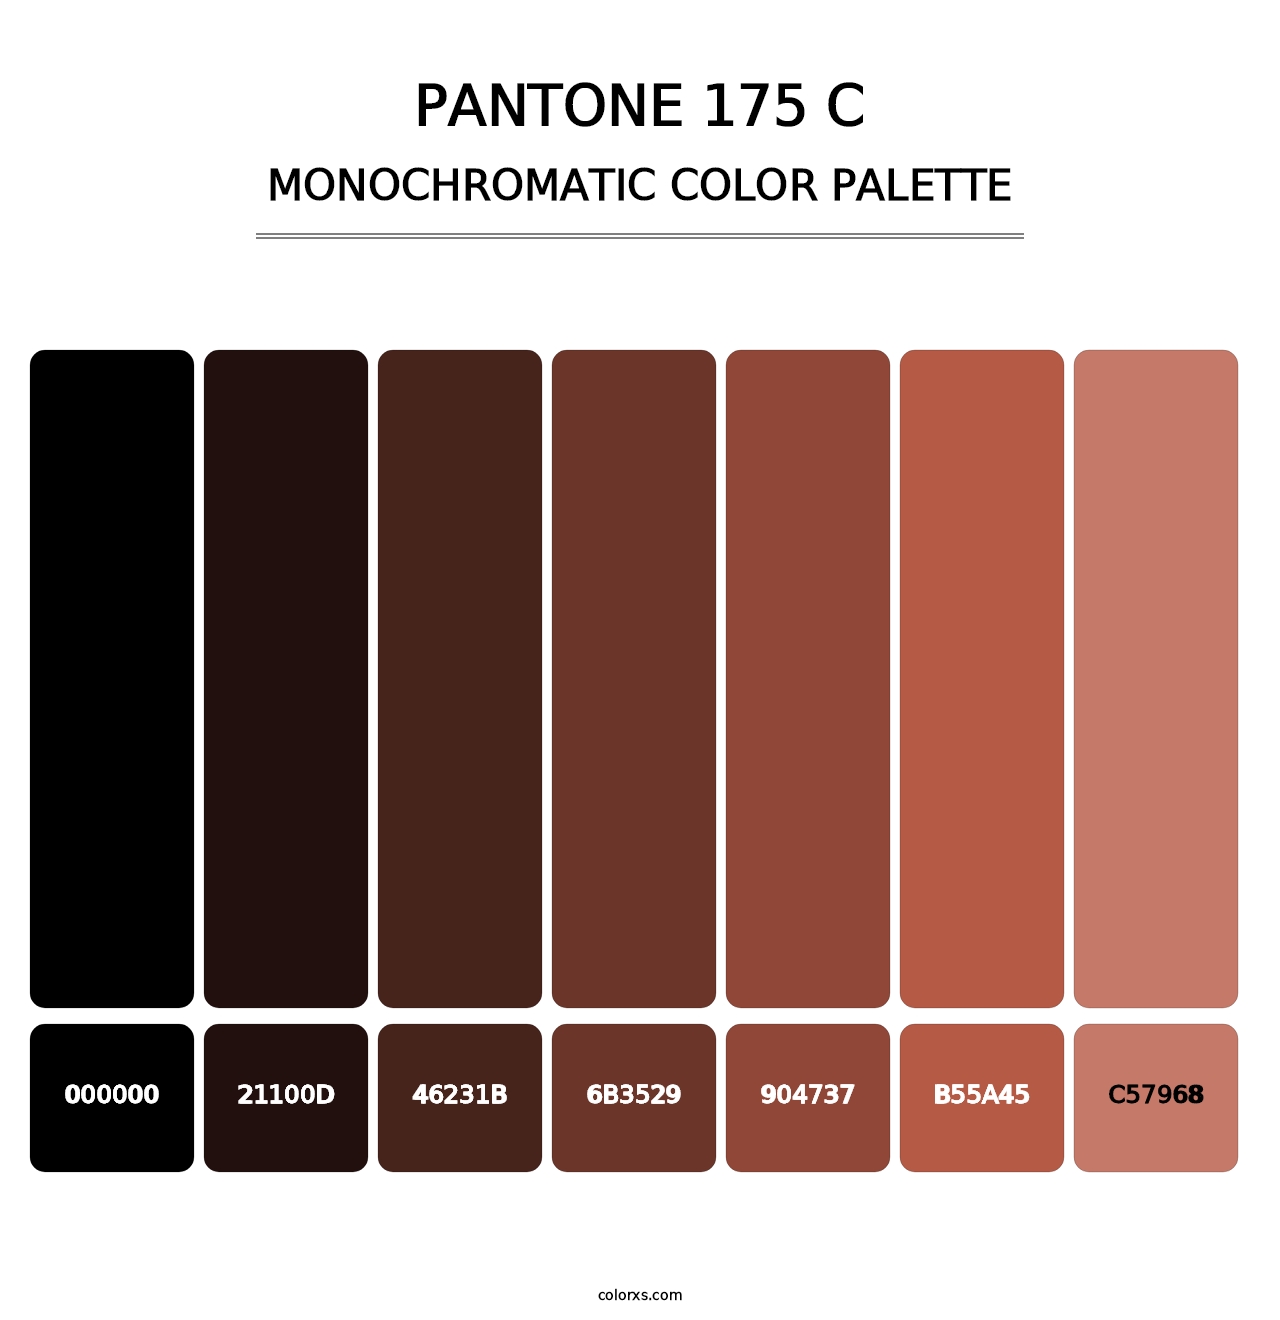 PANTONE 175 C - Monochromatic Color Palette